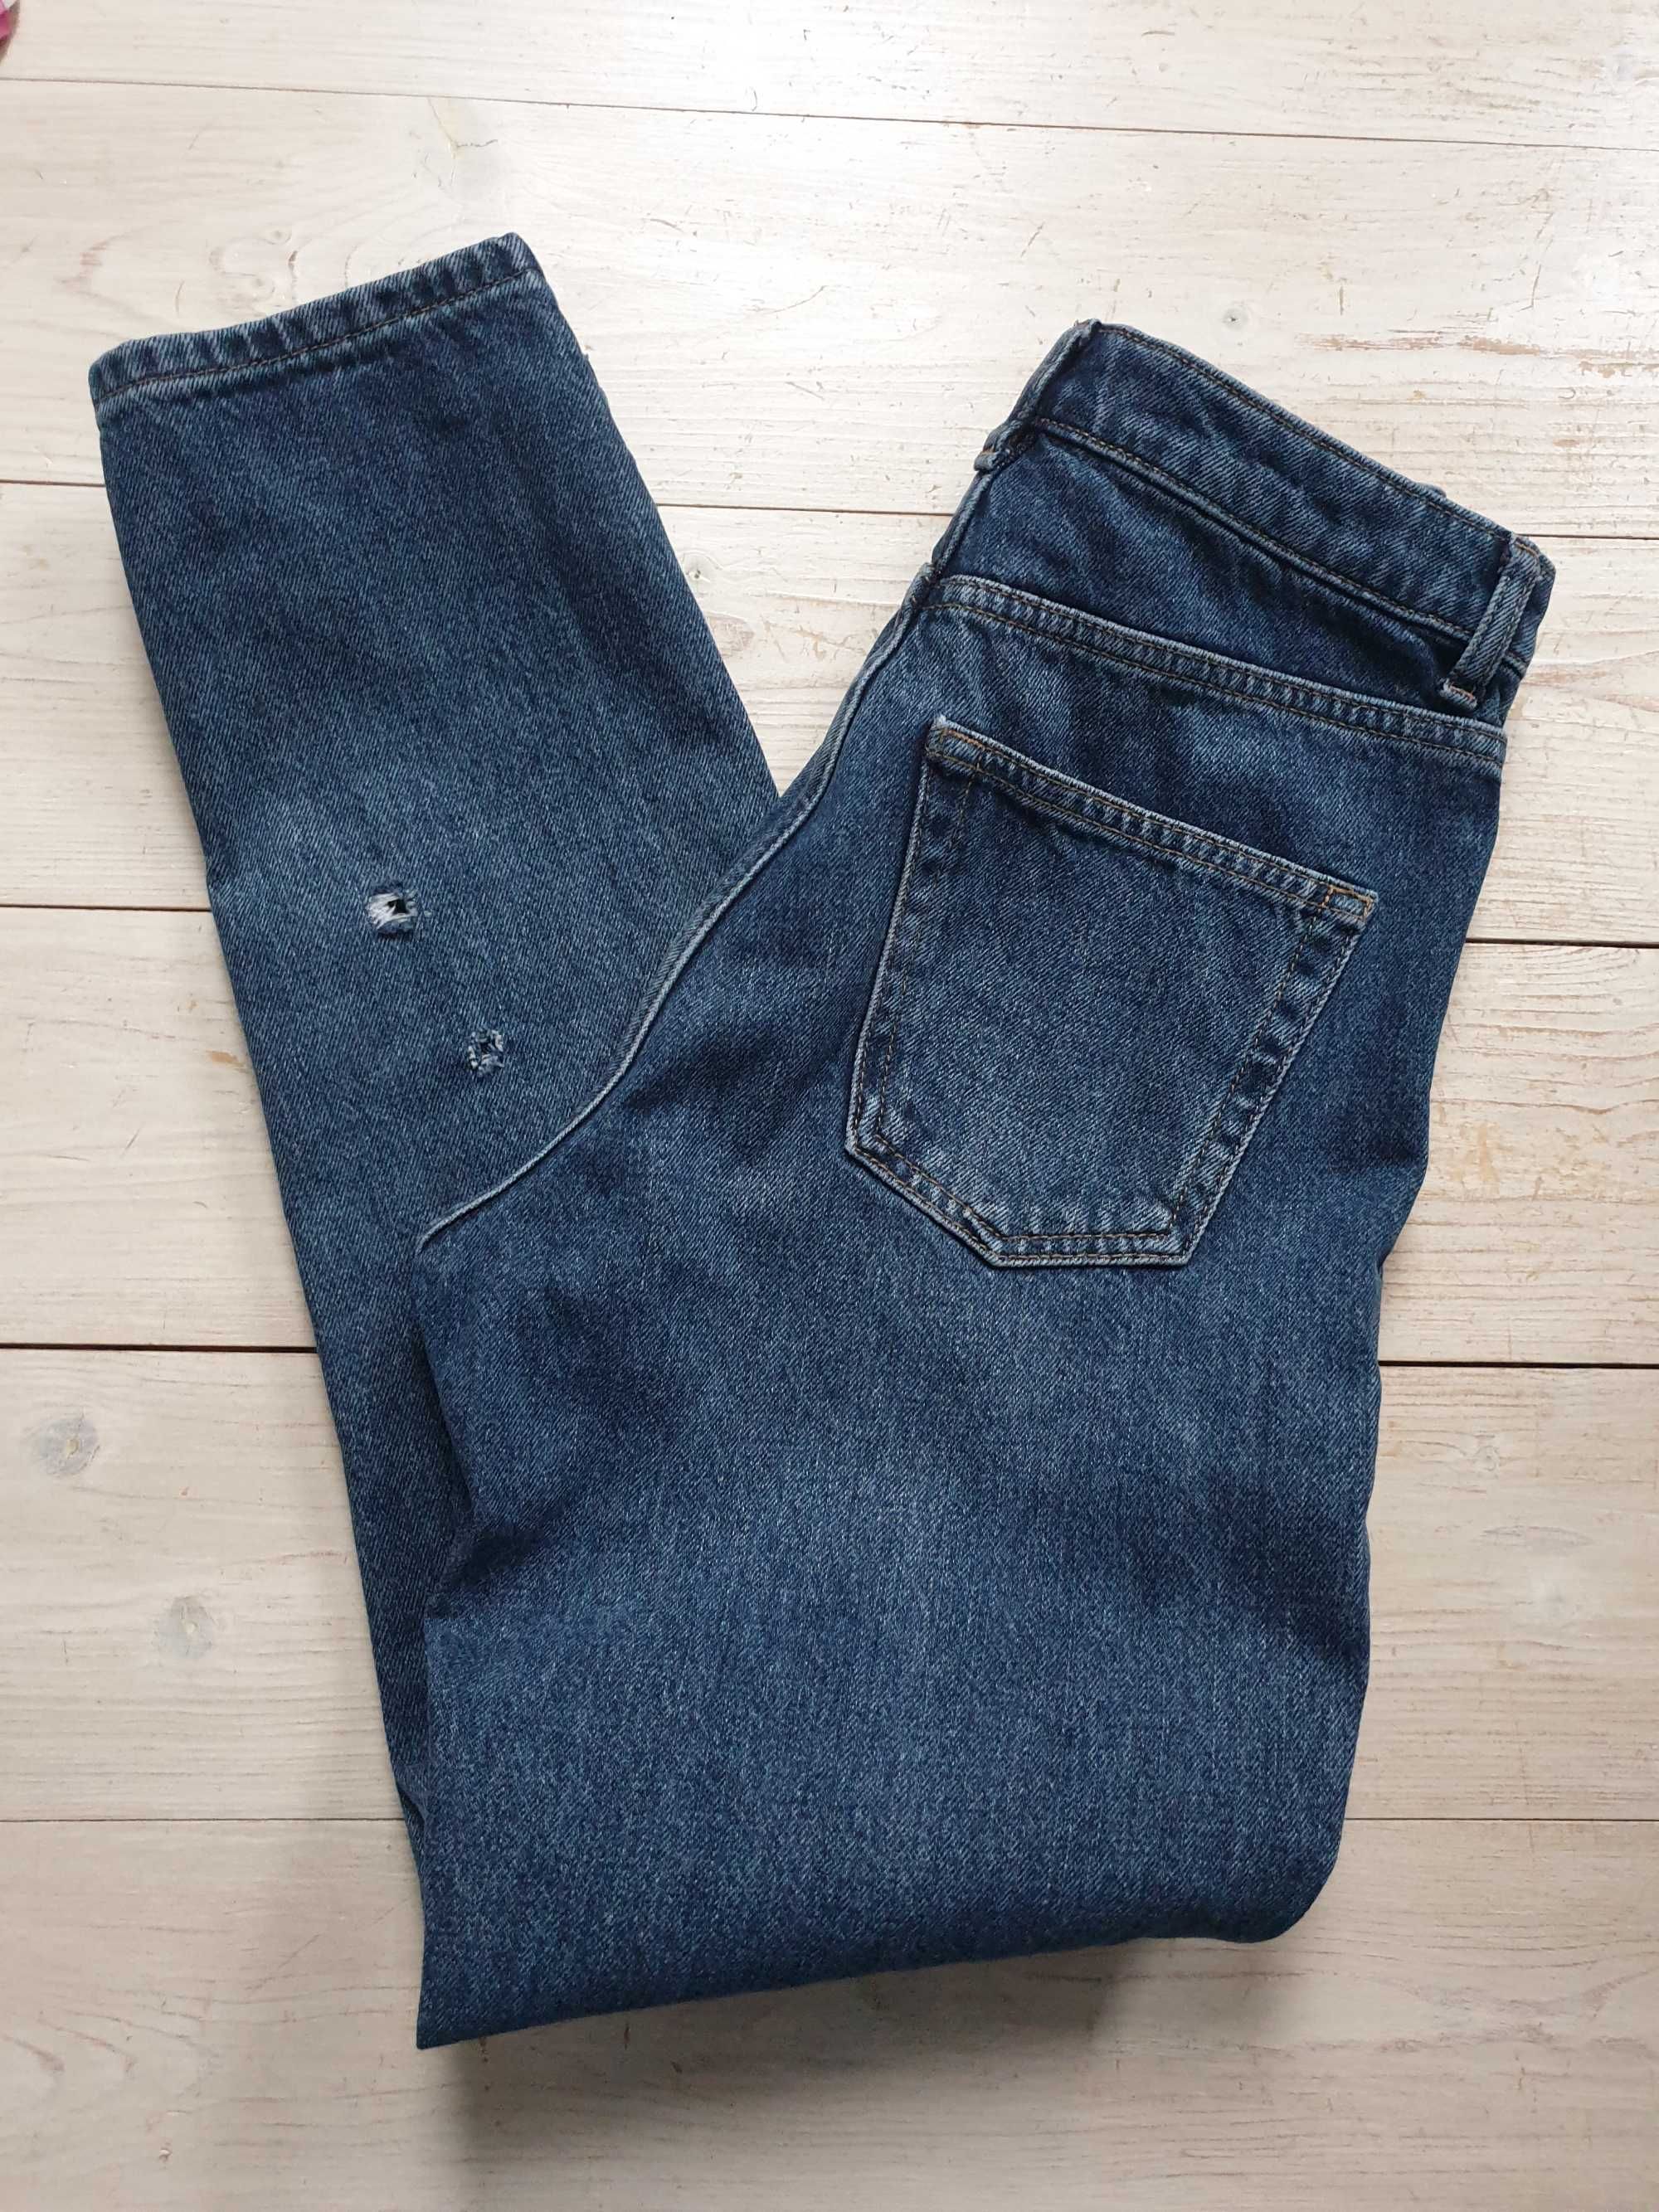 Dżinsy Mom Top Shop jeansy34 36 26/32 niebieskie granatowe